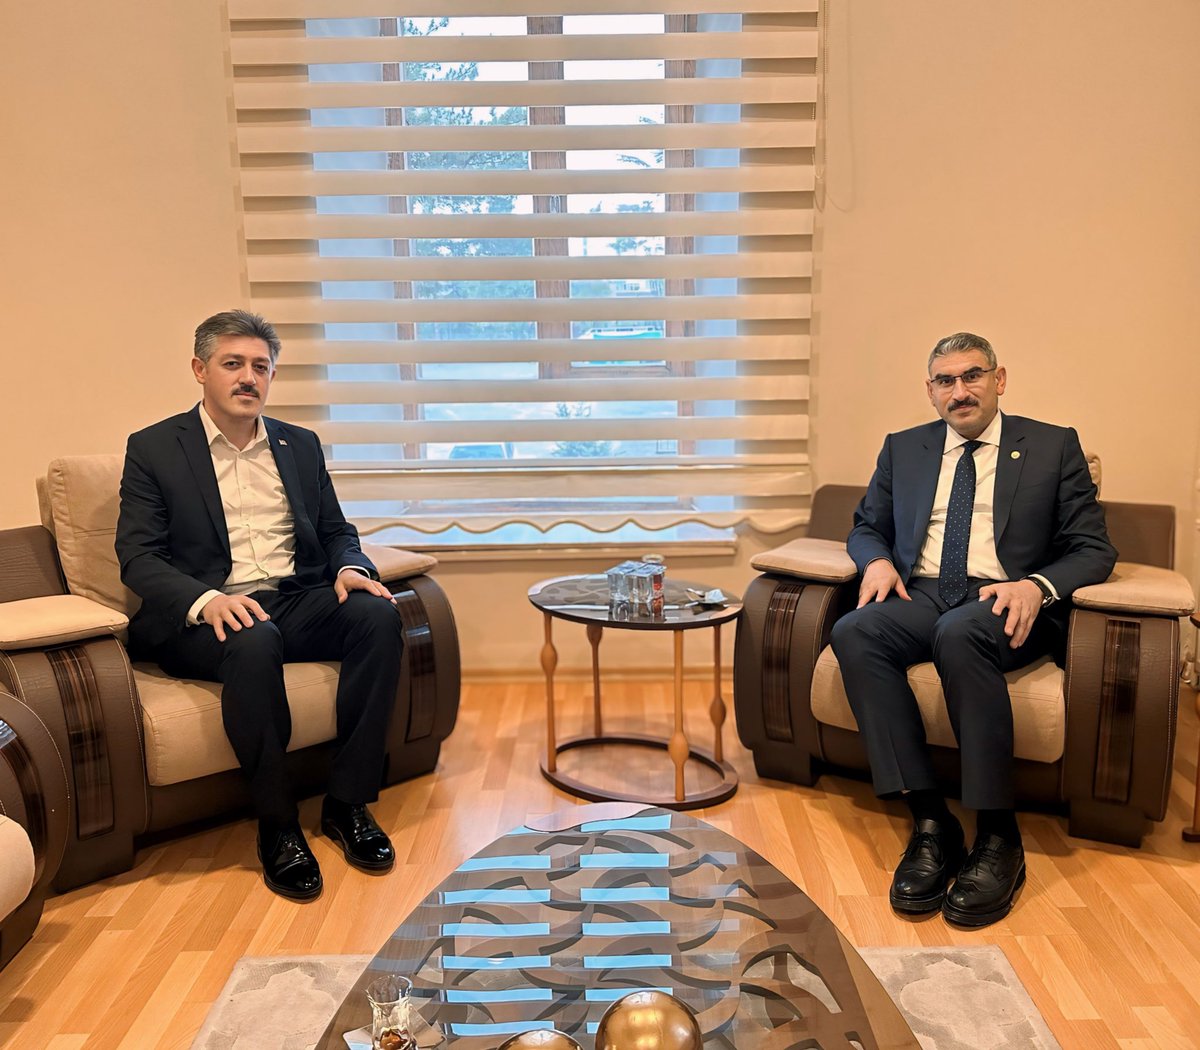 Adana Valiliği Yatırım İzleme ve Koordinasyon Başkanlığı (YİKOB) Müdürü, hemşehrimiz Sn. Mahmut Kıraç Bey ile bir araya gelerek sohbet ettik.

Hoş sohbetlerinden dolayı Müdürümüze teşekkür ederim.